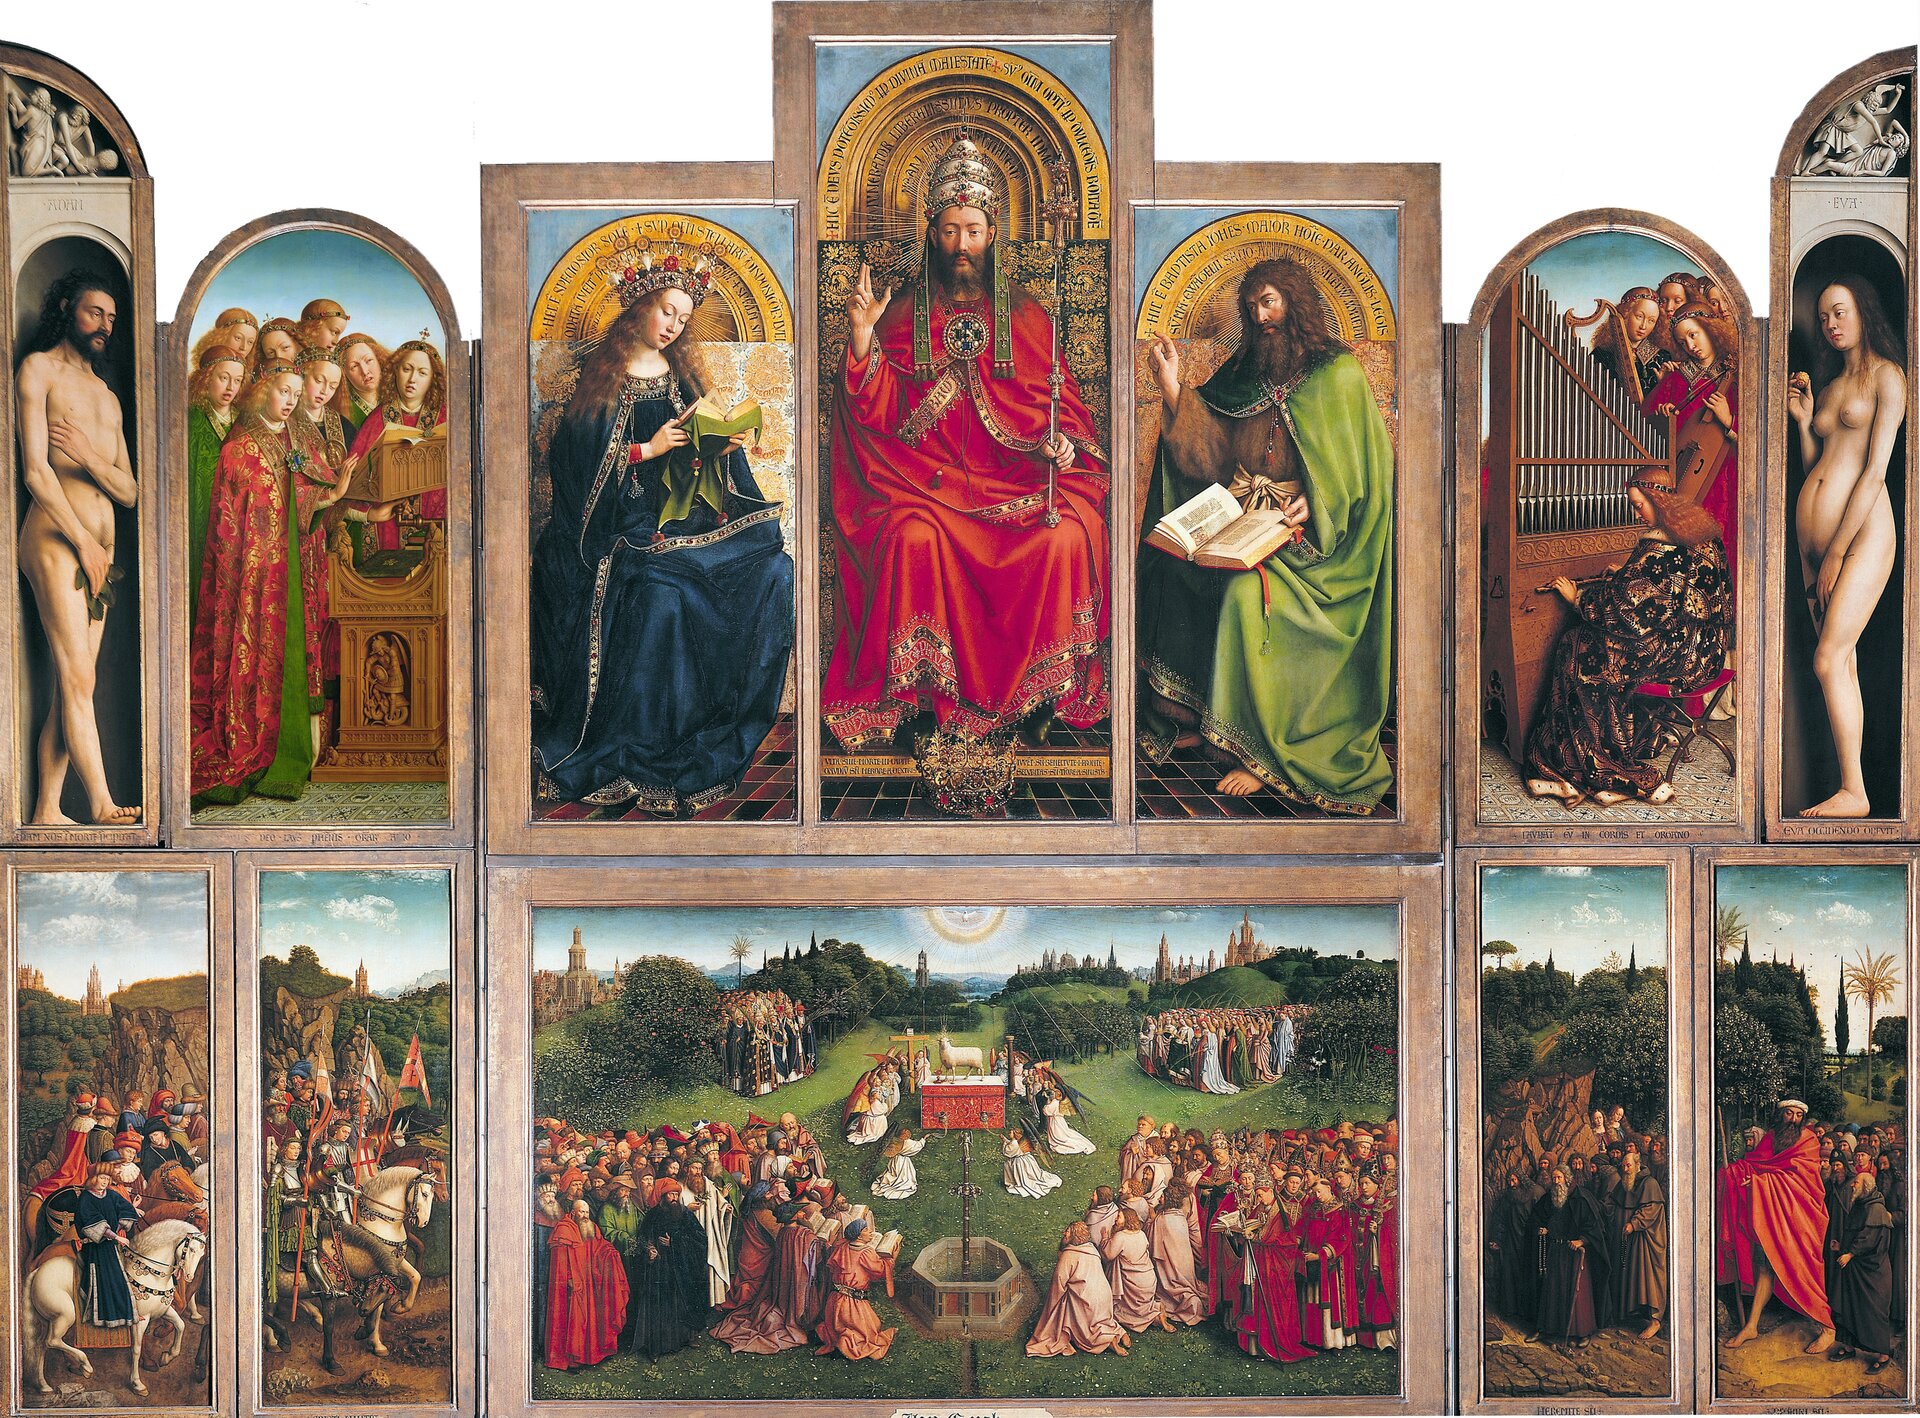 Ilustracja o poziomym układzie przedstawia ołtarz braci Huberta i Jana van Eycków z Katedry Świętego Barona w Gandawie. Nastawa ołtarzowa składa się z 12 tablic zestawionych w dwóch rzędach, W górnej części, pośrodku, siedzi na tronie Chrystus Król. Prawą ręką błogosławi, w lewej trzyma berło. Na głowie ma tiarę, a u jego stóp leży korona. Po lewej stronie siedzi Maria z modlitewnikiem. Po prawej stronie Jan Chrzciciel z księgą na kolanach i uniesioną prawą ręką. Nad nimi znajdują się złote półokręgi z napisami. Po obu stronach, na wewnętrznych skrzydłach, ukazani są grające i śpiewające aniołowie. Kolejne, znajdujące się na brzegu tablice, przedstawiają Adama (lewa strona) i Ewę (prawa strona). Postacie stoją na ciemnym tle, a nad nimi znajduje się dekoracja imitująca płaskorzeźby z Kainem i Ablem. Dolną część w centrum wypełnia obraz ukazujący adorację Baranka Mistycznego. W tle stoi ołtarz z Barankiem, z którego boku wypływa krew. Dokoła klęczą aniołowie, a na pierwszym planie stoi fontanna. Z lewej i prawej strony ukazane są: kler, kobiety, poganie i Żydzi oraz papieże i biskupi. Jedni się modlą, inni stoją i rozmawiają. Na zewnętrznych skrzydłach po lewej stronie znajdują się Sędziowie Sprawiedliwi i Rycerze Chrystusa na koniach z chorągwiami. Prawa strona przedstawia pustelników i pielgrzymów. Tłem we wszystkich kwaterach dolnych jest drobiazgowo opracowany pejzaż z architekturą w tle, drzewami, górzystym terenem i pogodnym niebem.